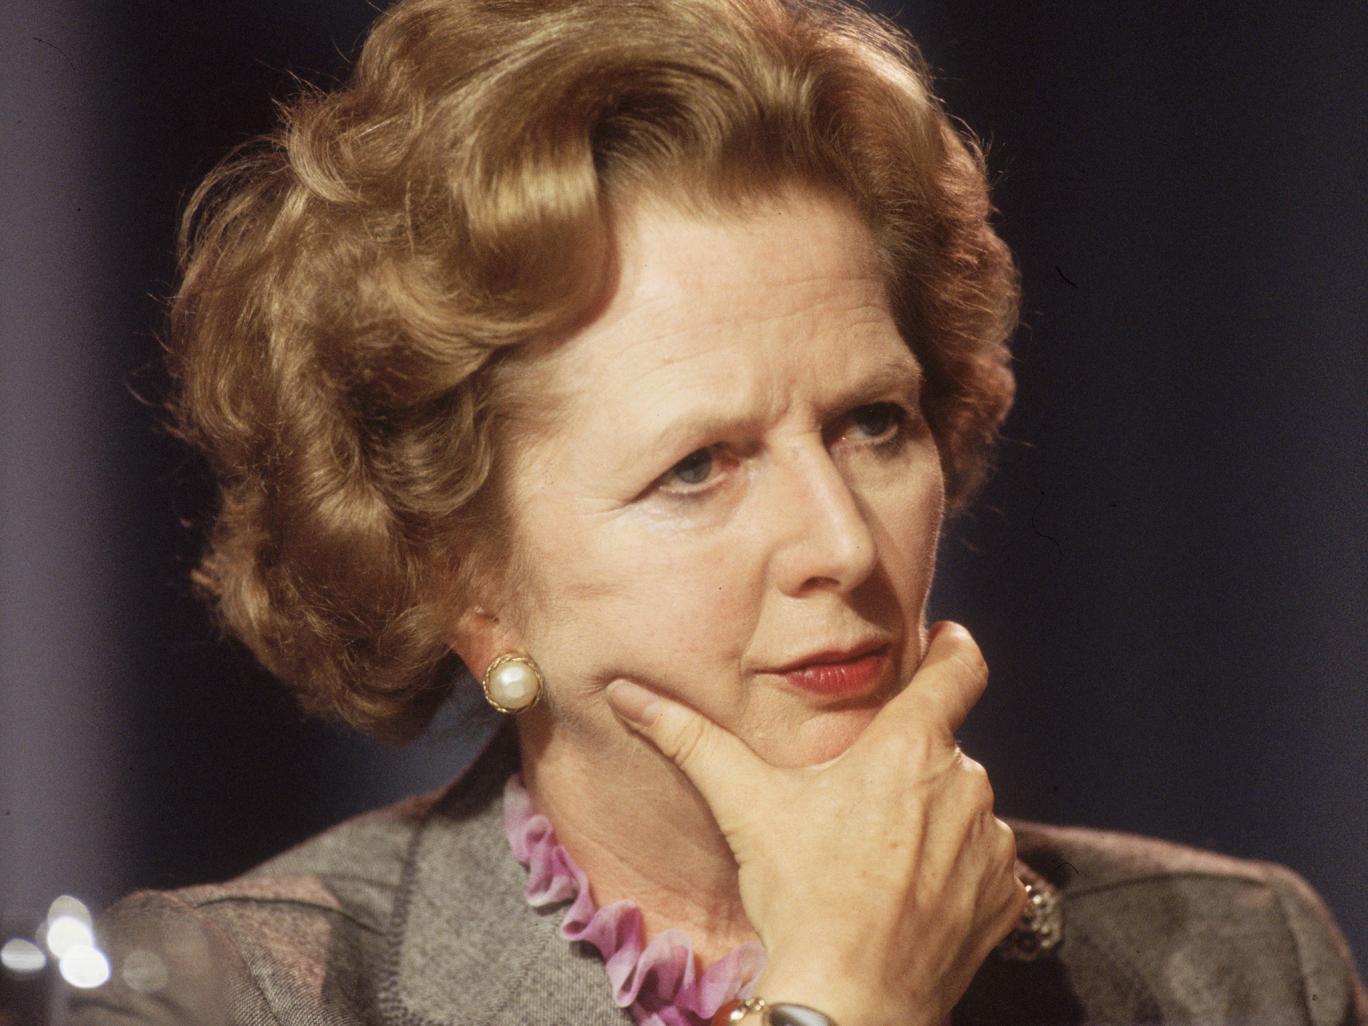 Para Mezzomo, é possível que surja uma Margaret Thatcher no Brasil. (Foto: Reprodução / The Independent)